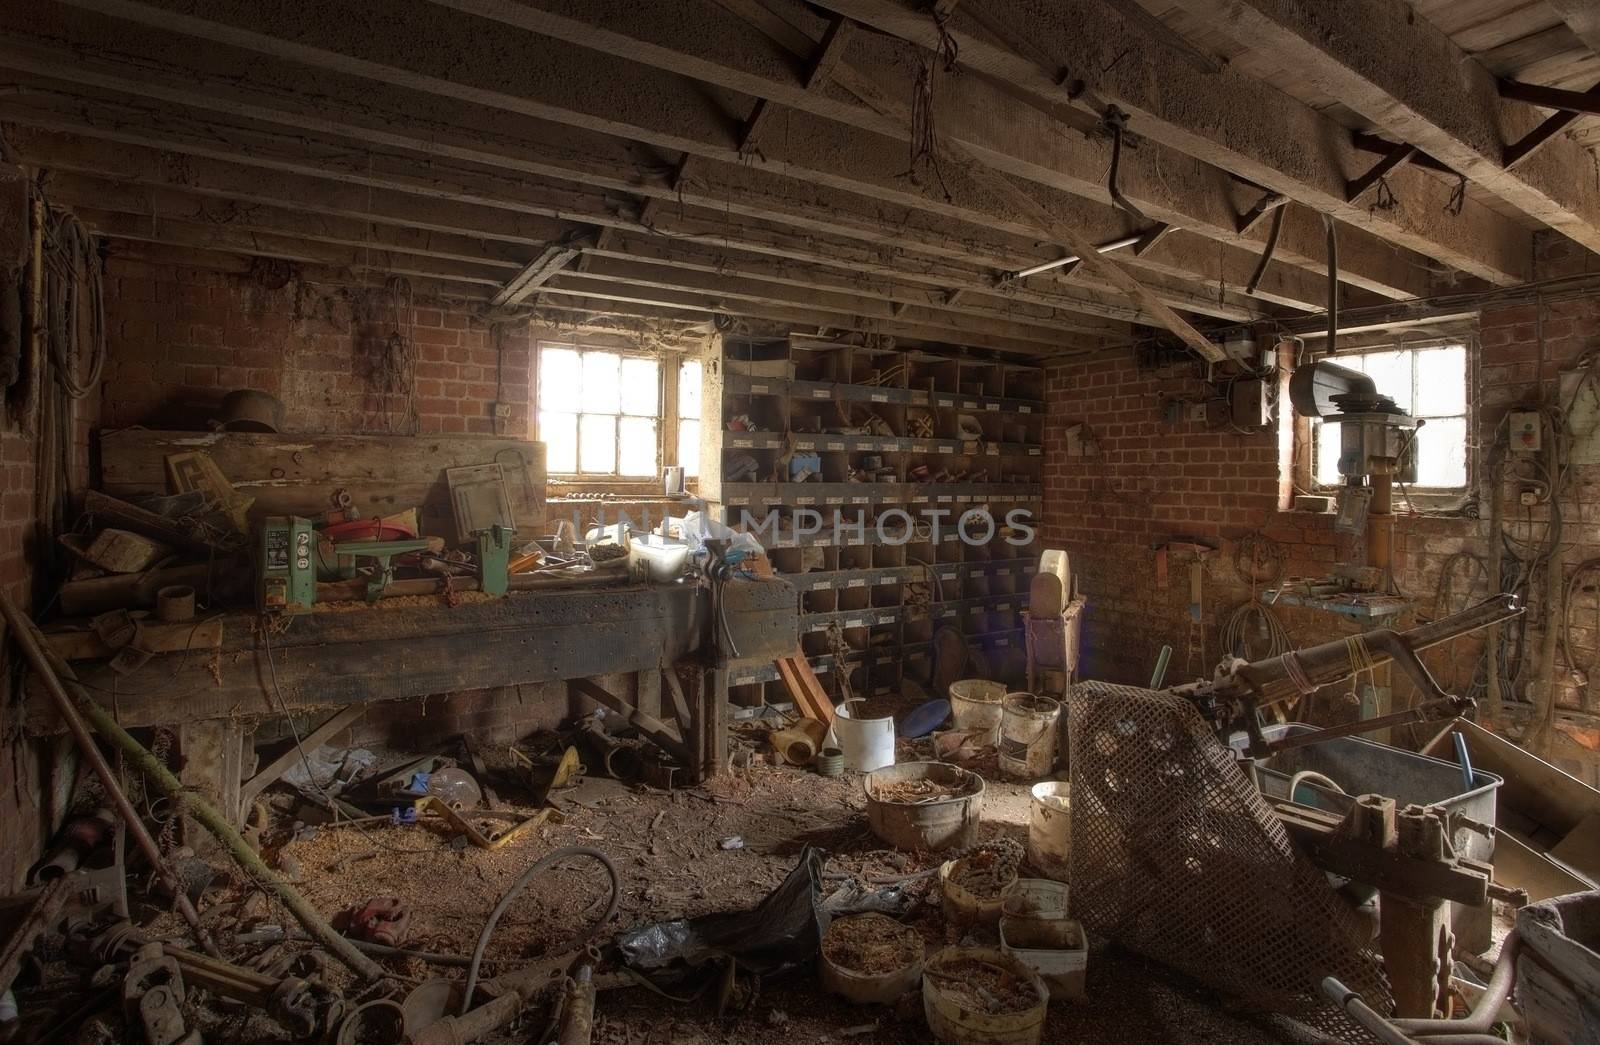 Old farm workshop, Shropshire, England.